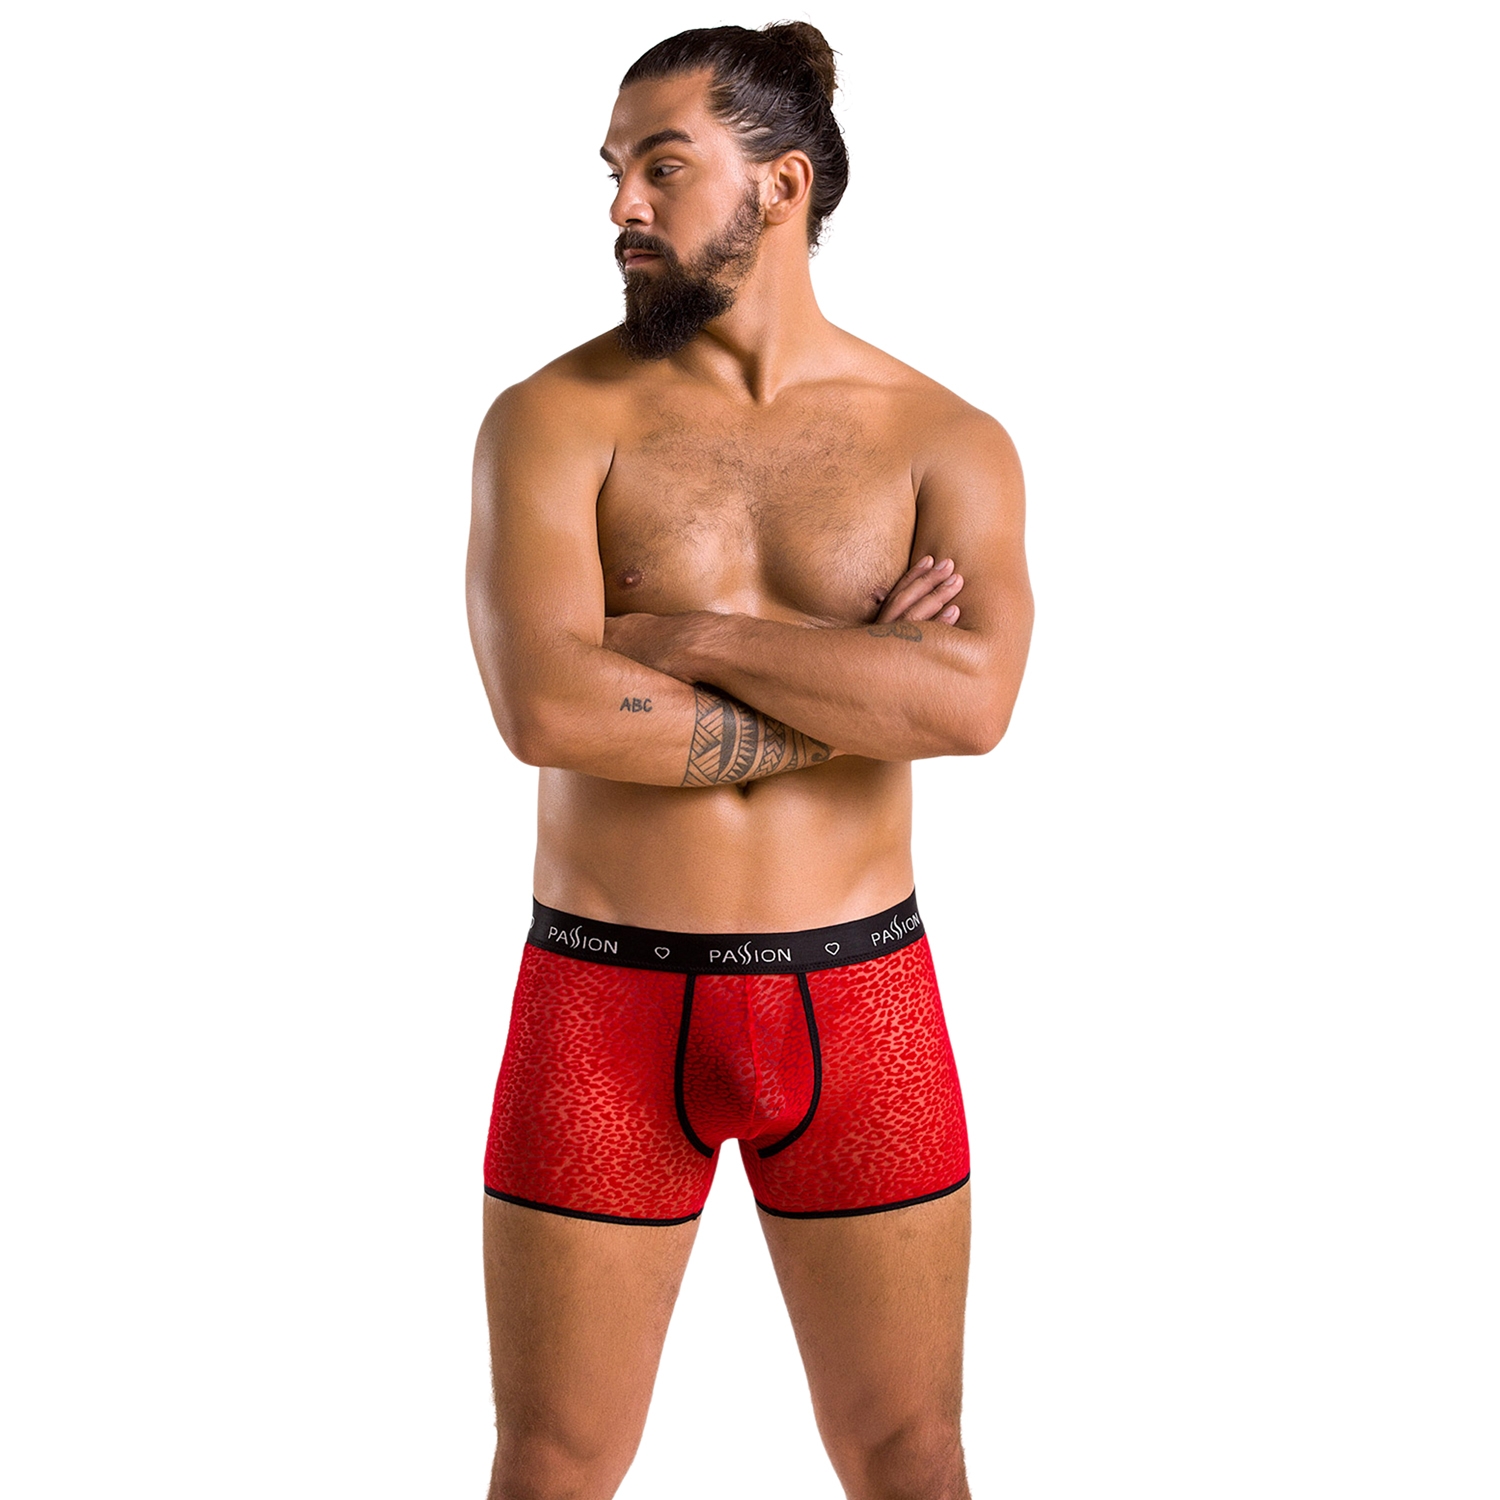 Passion Parker Röda Boxershorts - Röd - L/XL | Män//REA för Män//REA//Underkläder För Män//Passion//Boxer Shorts | Intimast